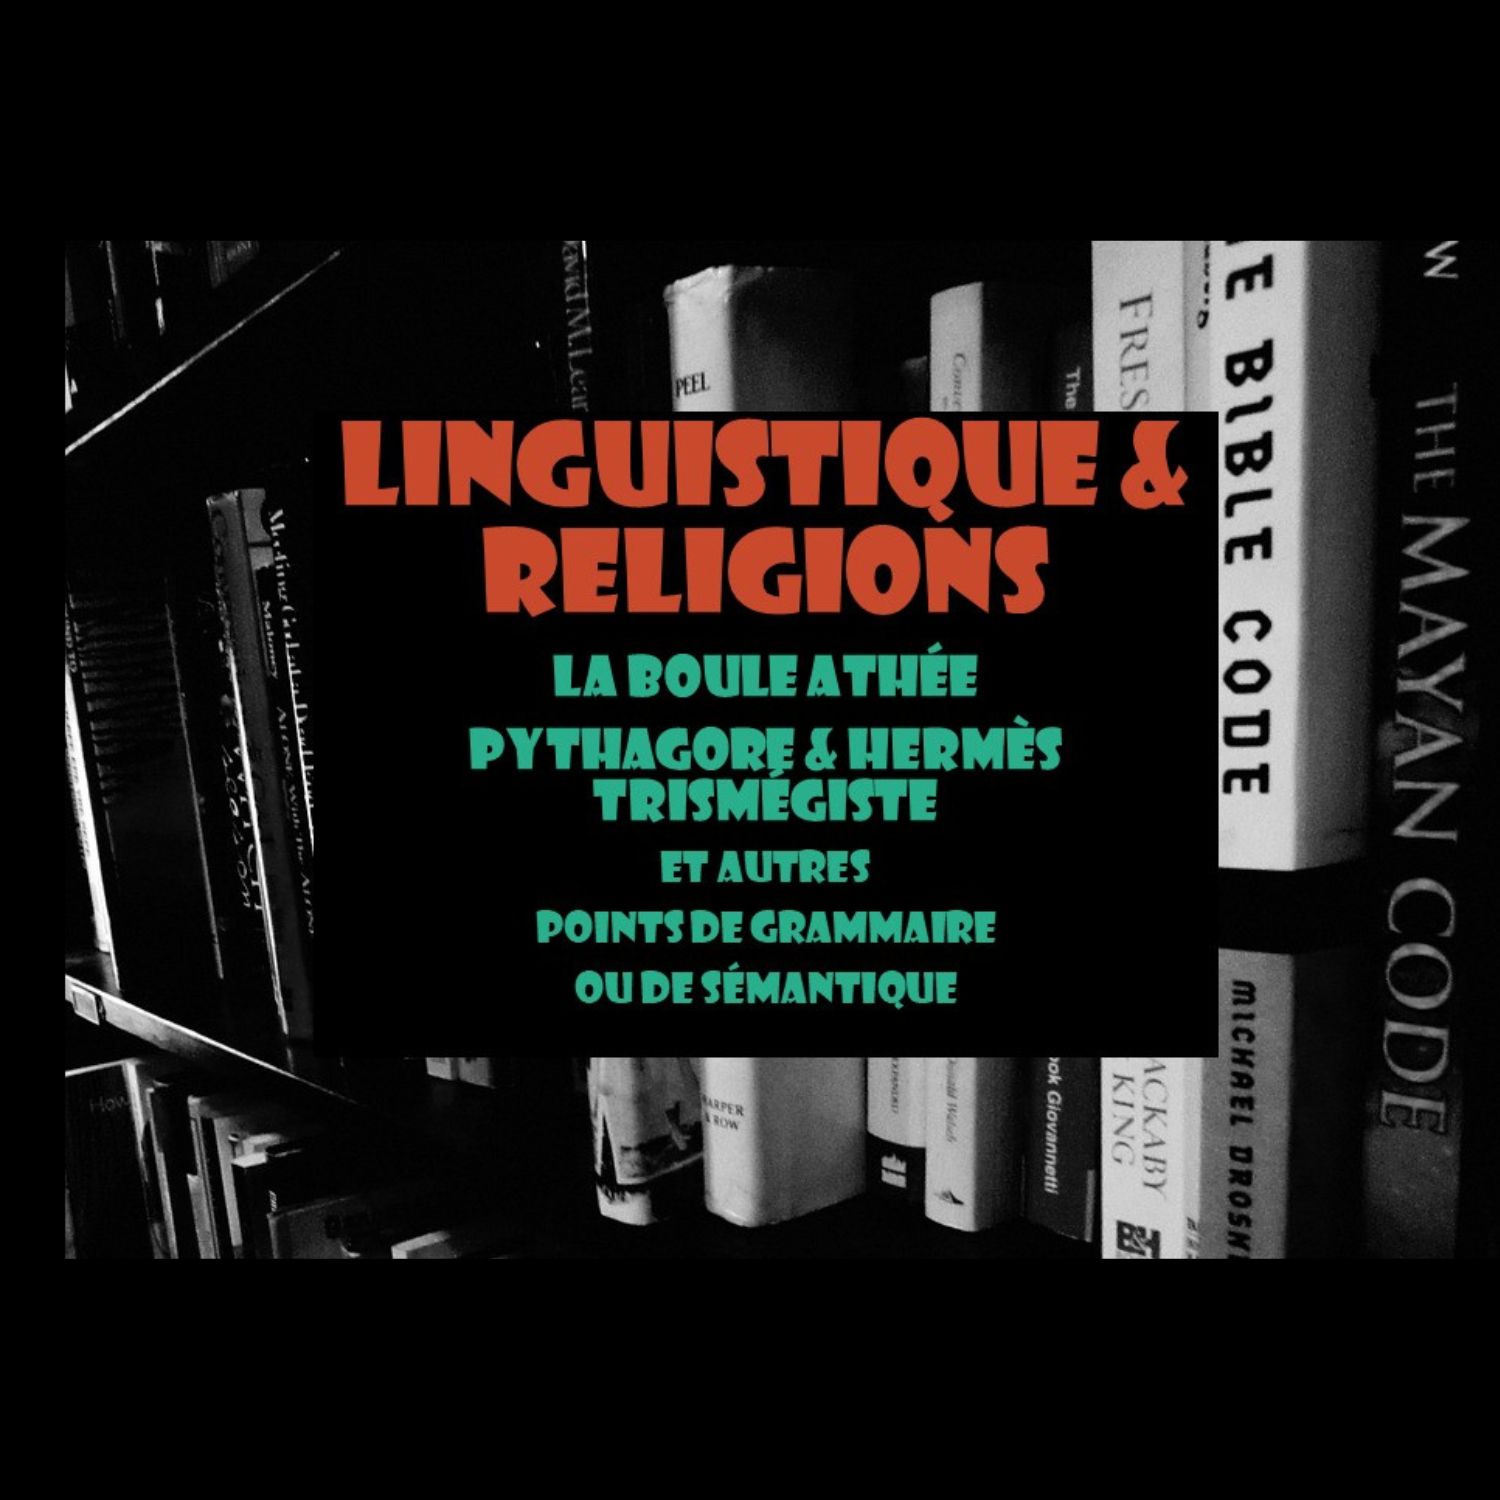 Linguistique et religion